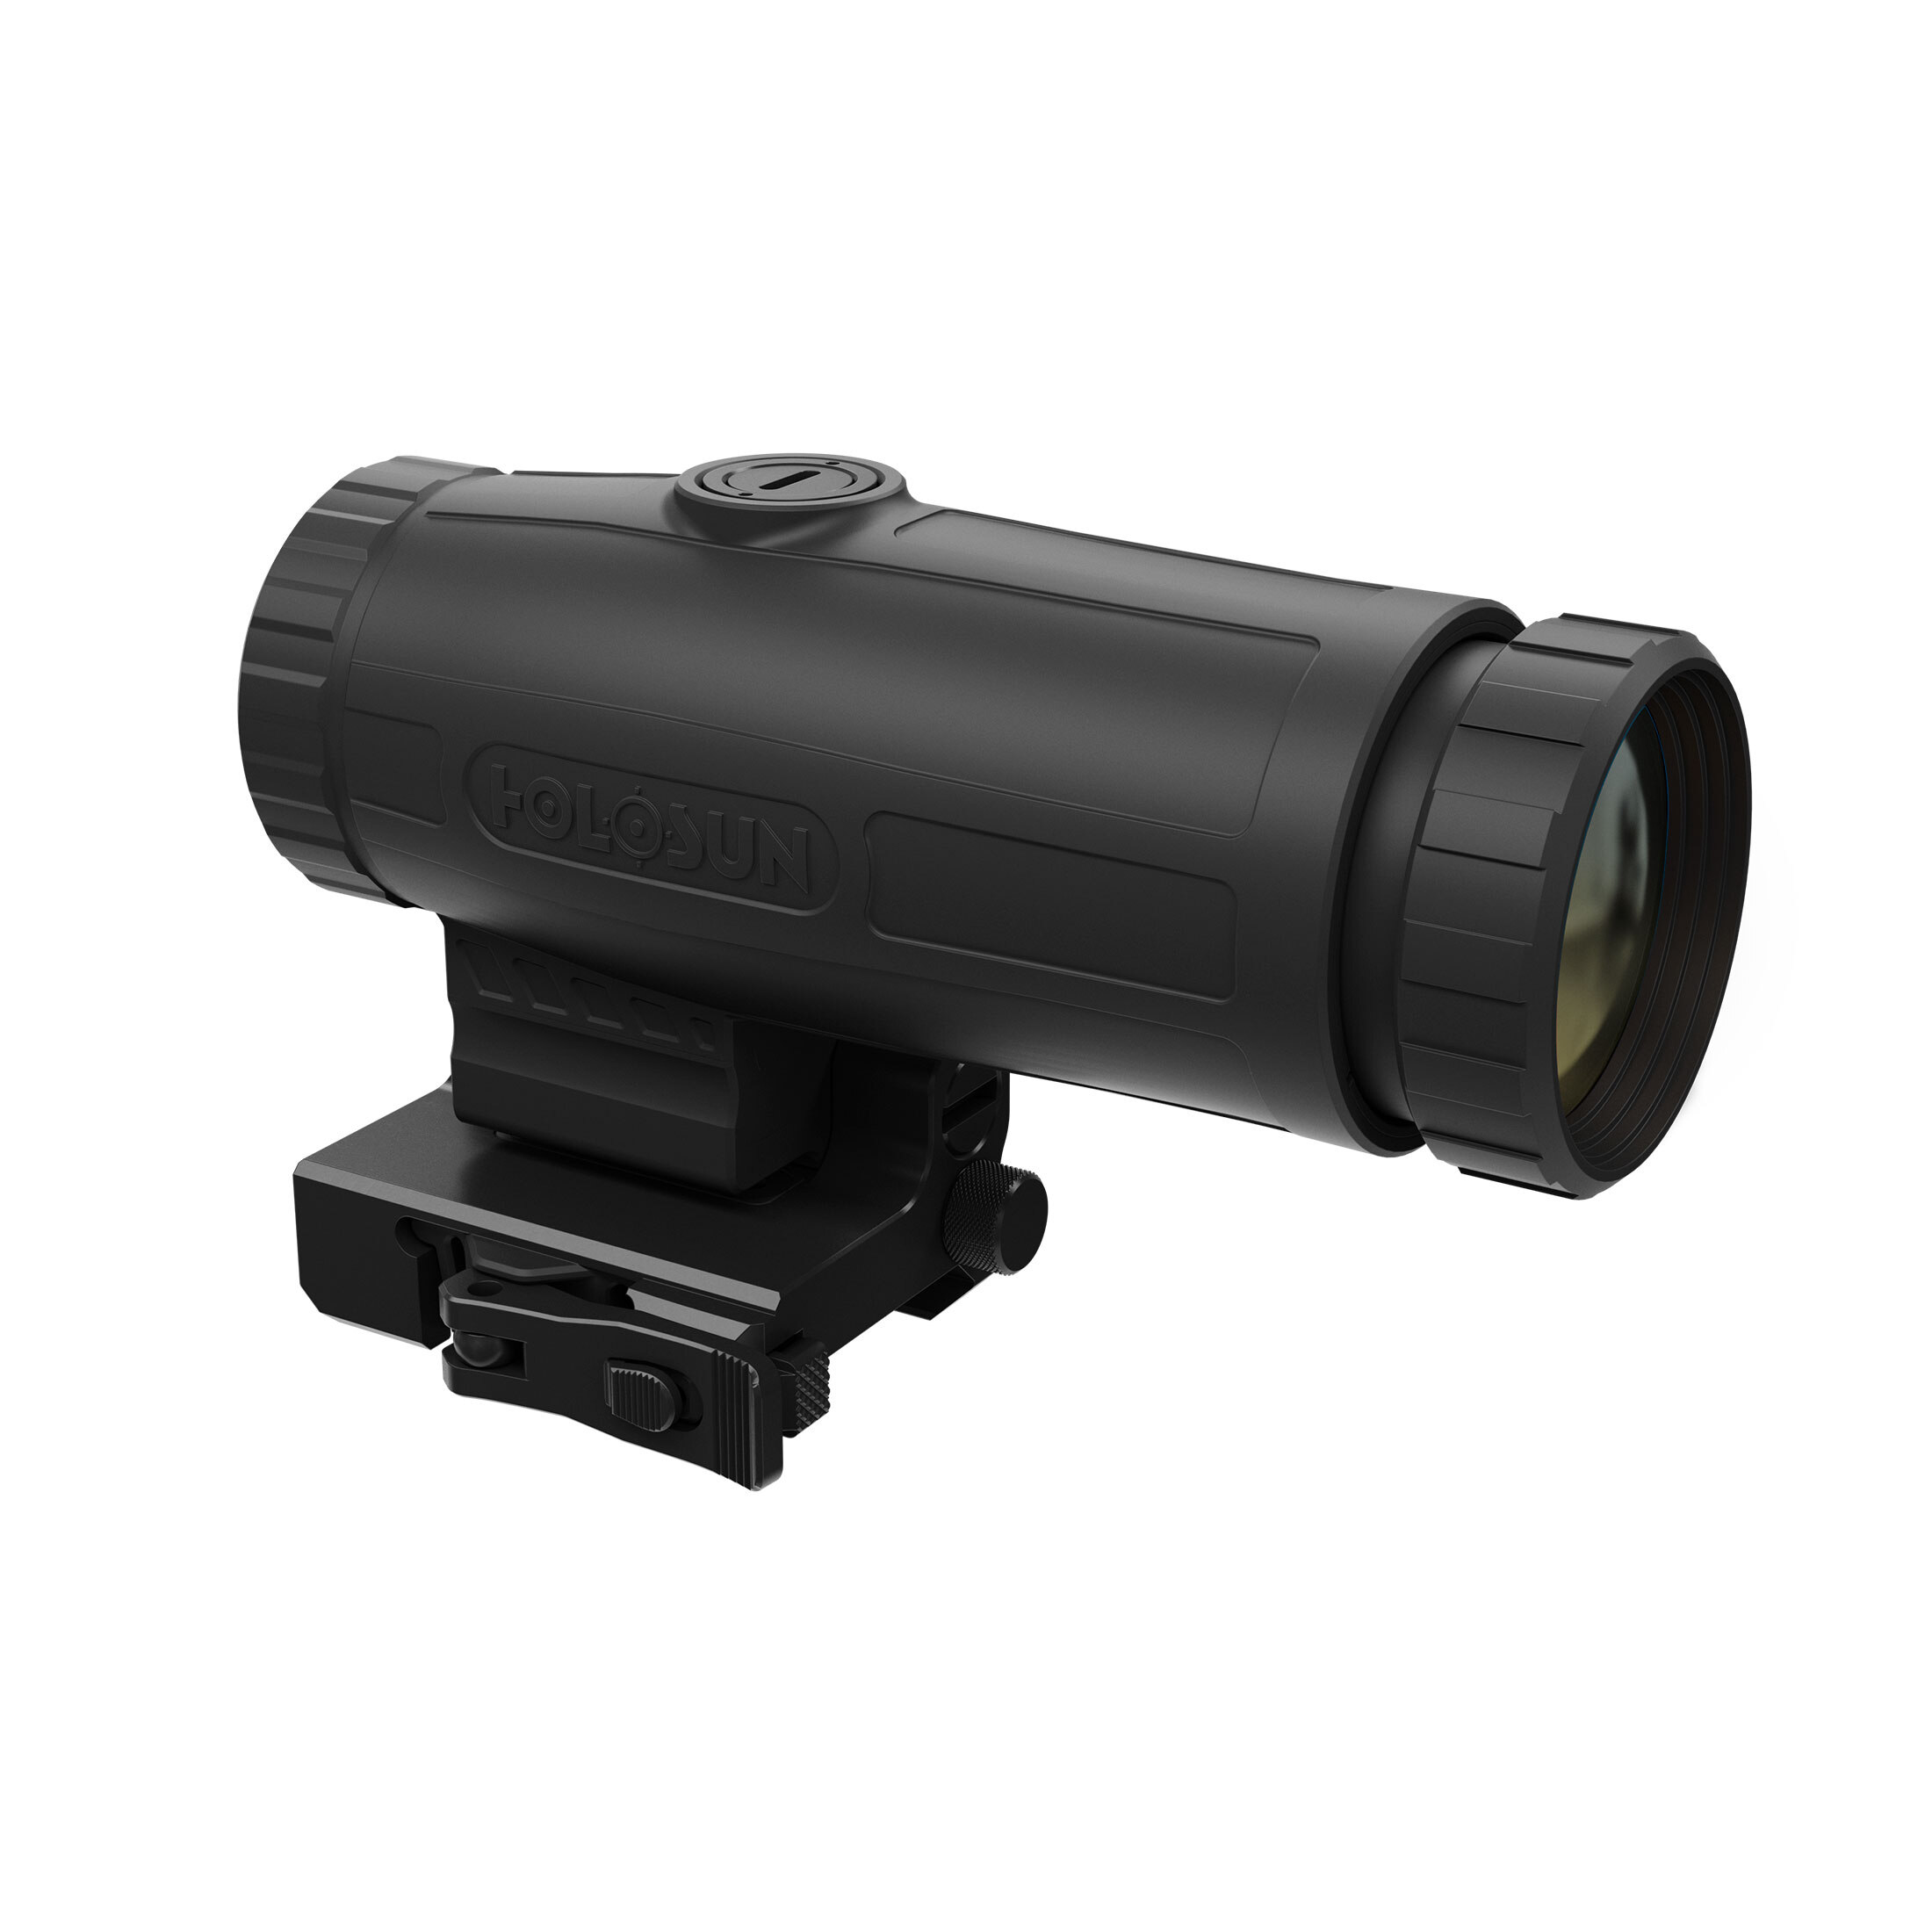 Holosun Magnifier HM3X, 3-krotne powiększenie, kolor czarny, Picatinny, łowiectwo, strzelanie sport…